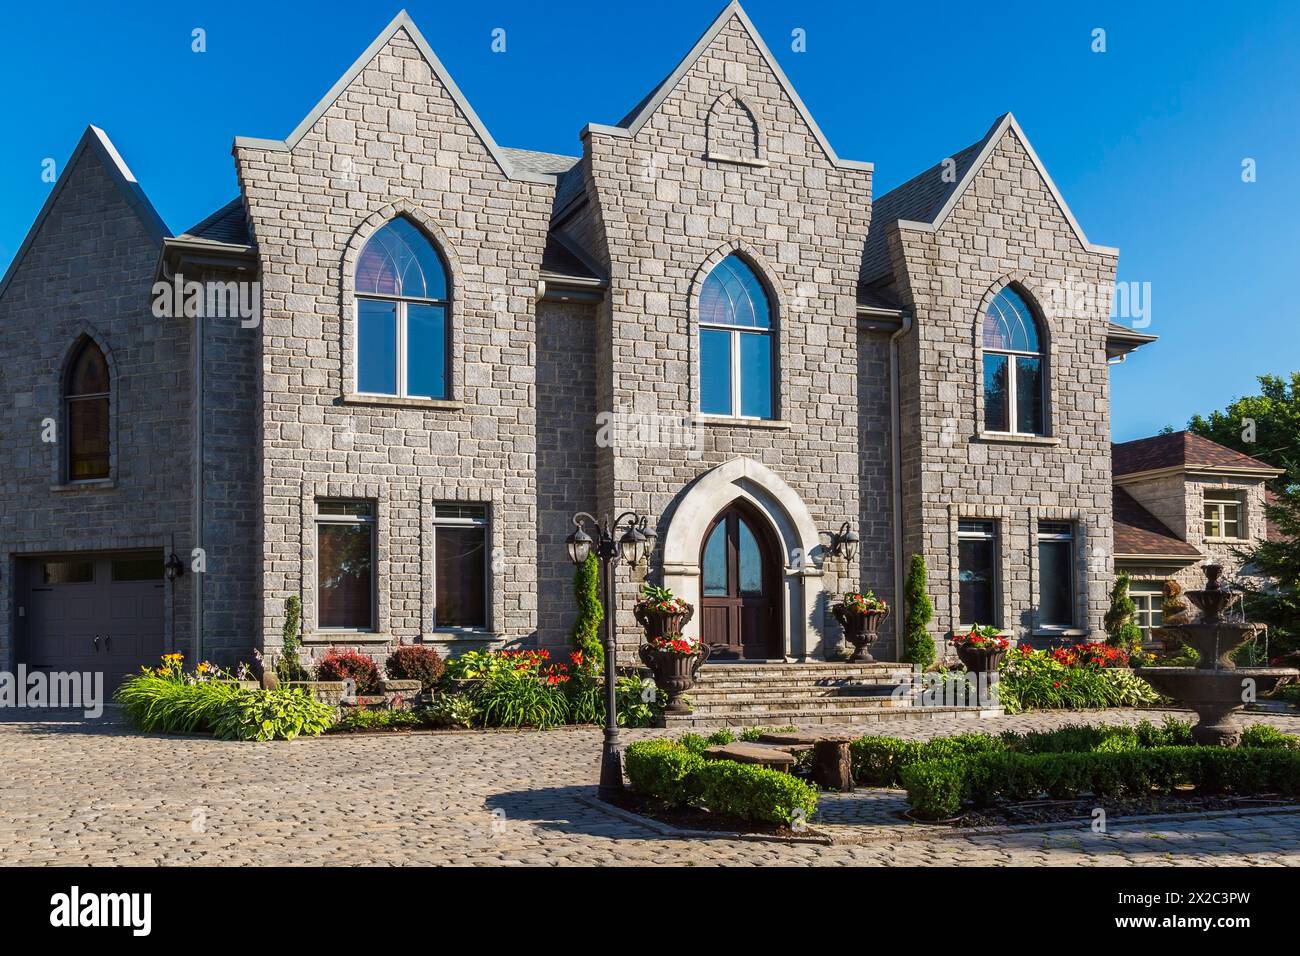 Façade de maison de style gothique en pierre taillée nuancée grise de deux étages avec cour avant paysagée en été. Banque D'Images